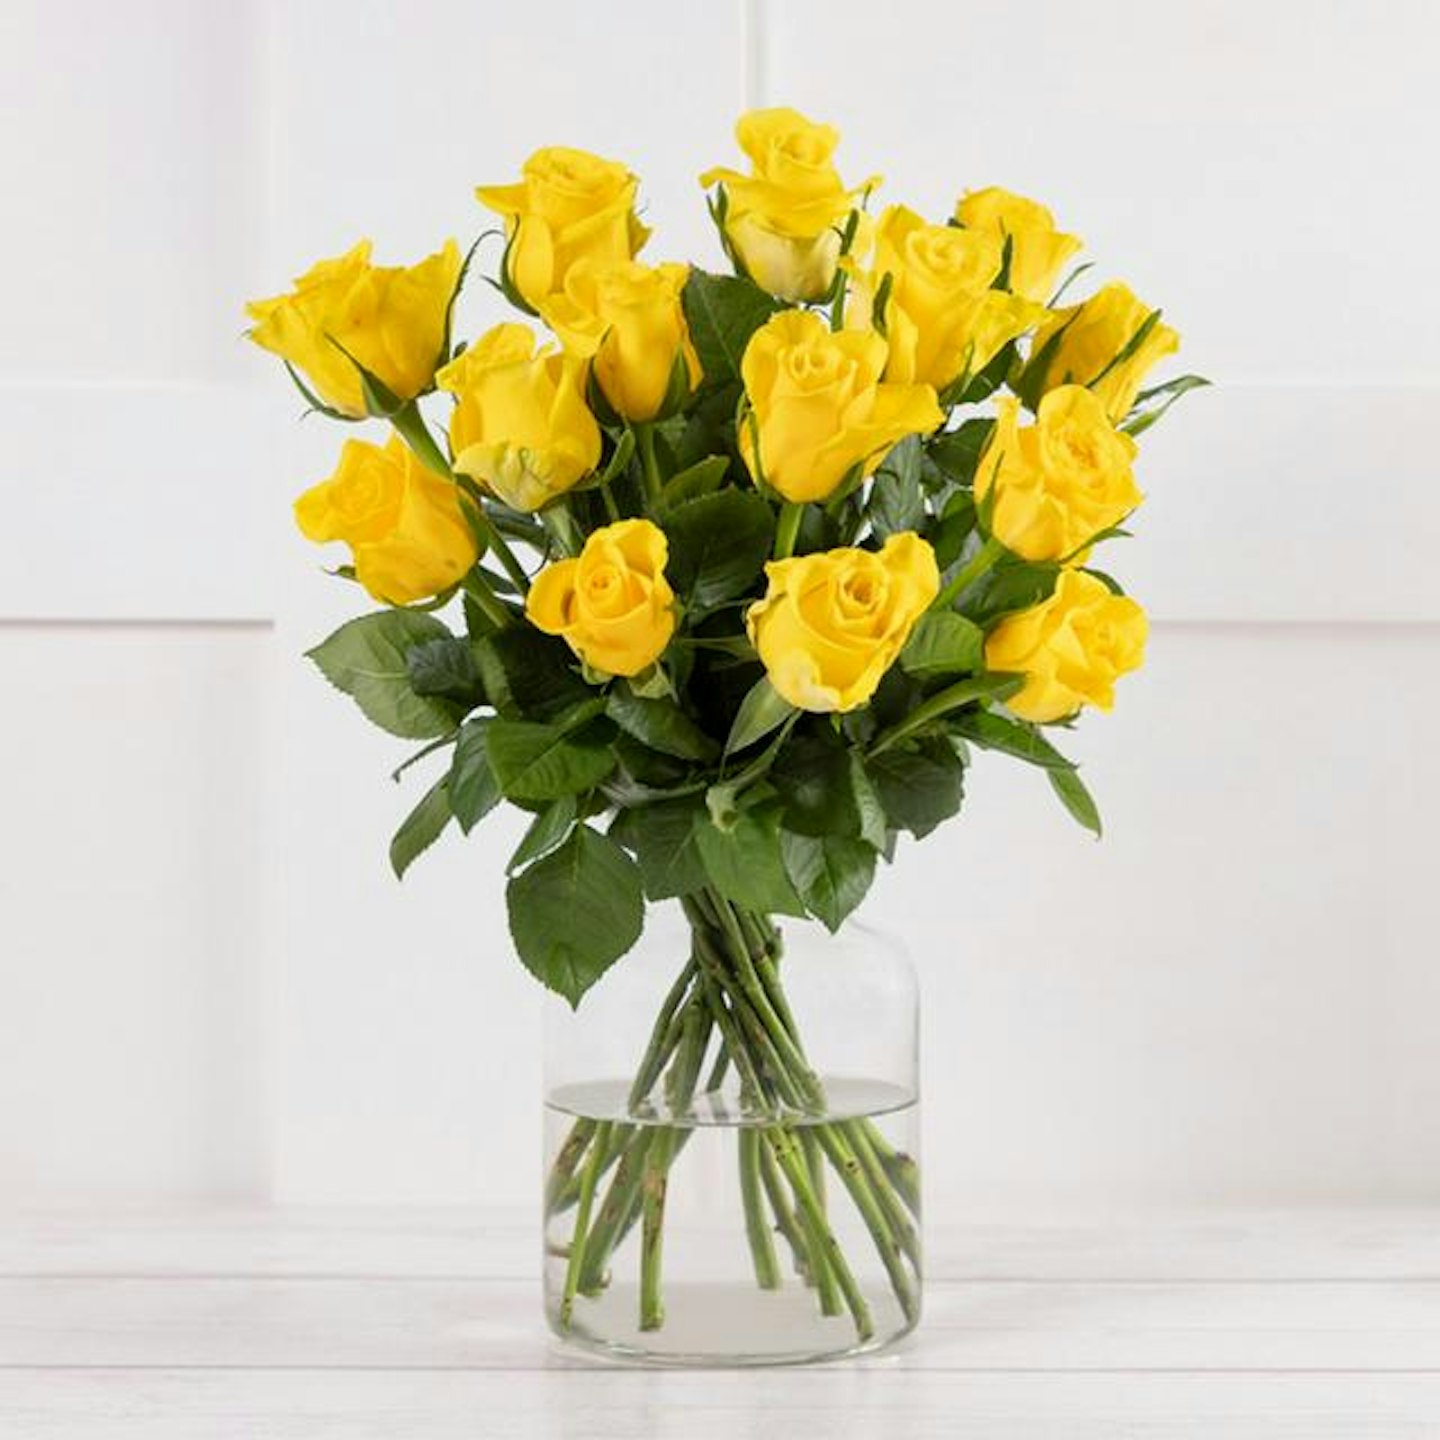 Sainsbury's yellow roses